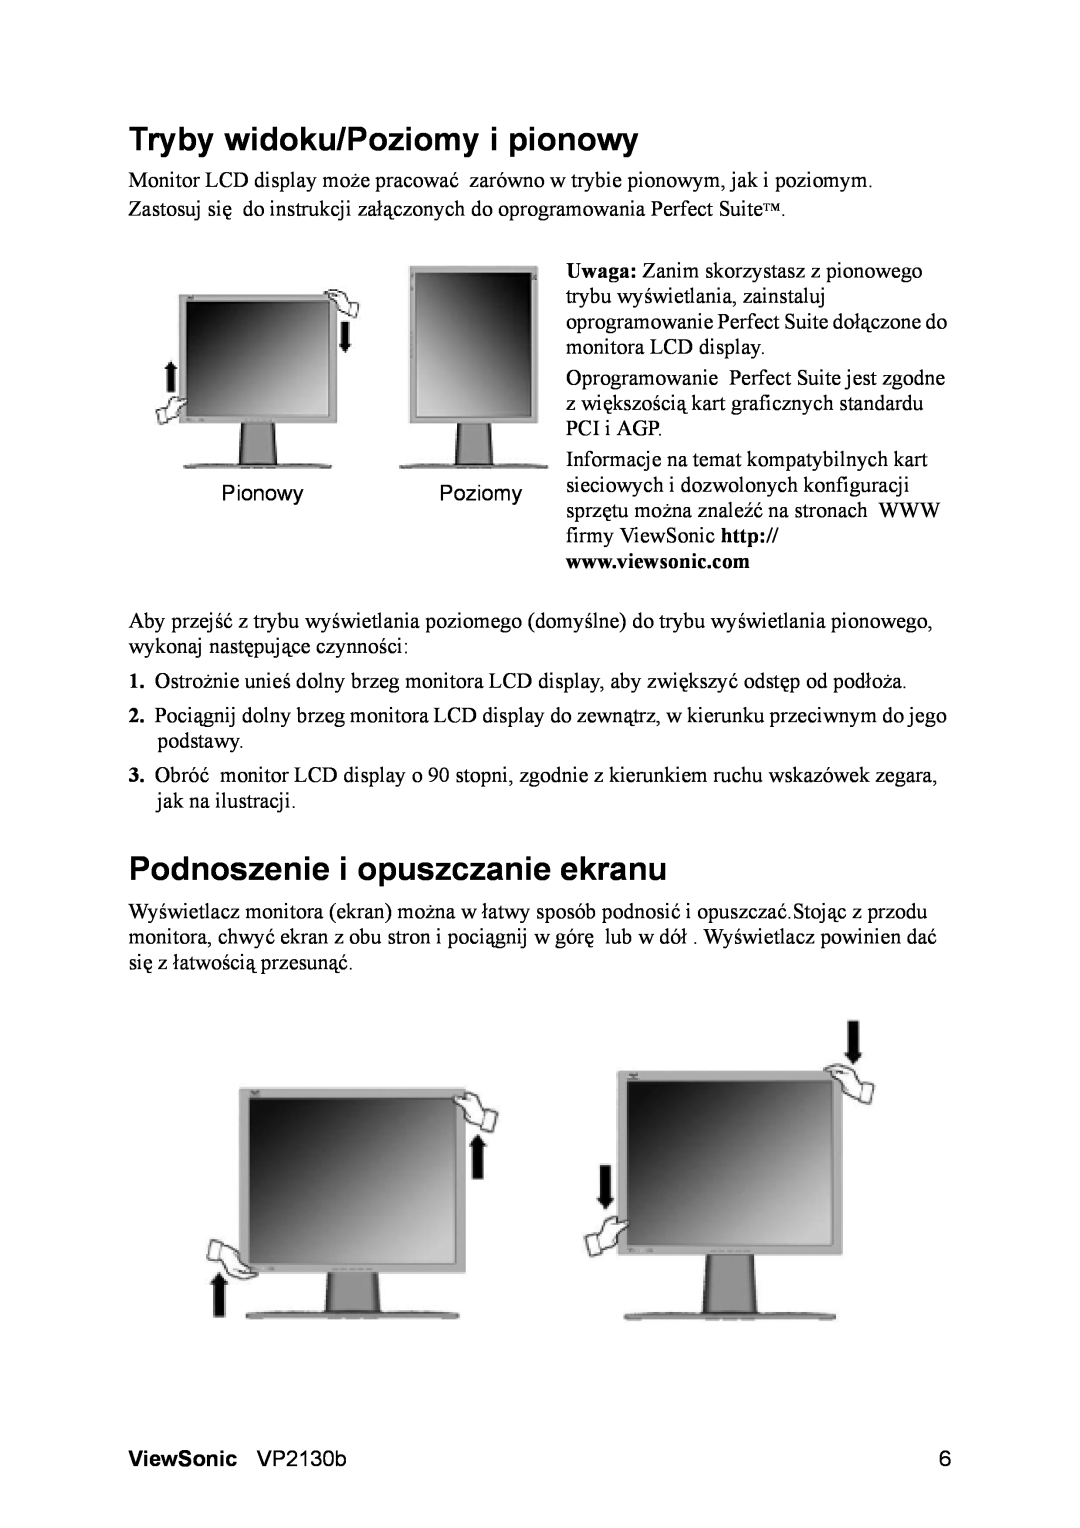 ViewSonic VS10773 manual Tryby widoku/Poziomy i pionowy, Podnoszenie i opuszczanie ekranu, ViewSonic VP2130b 